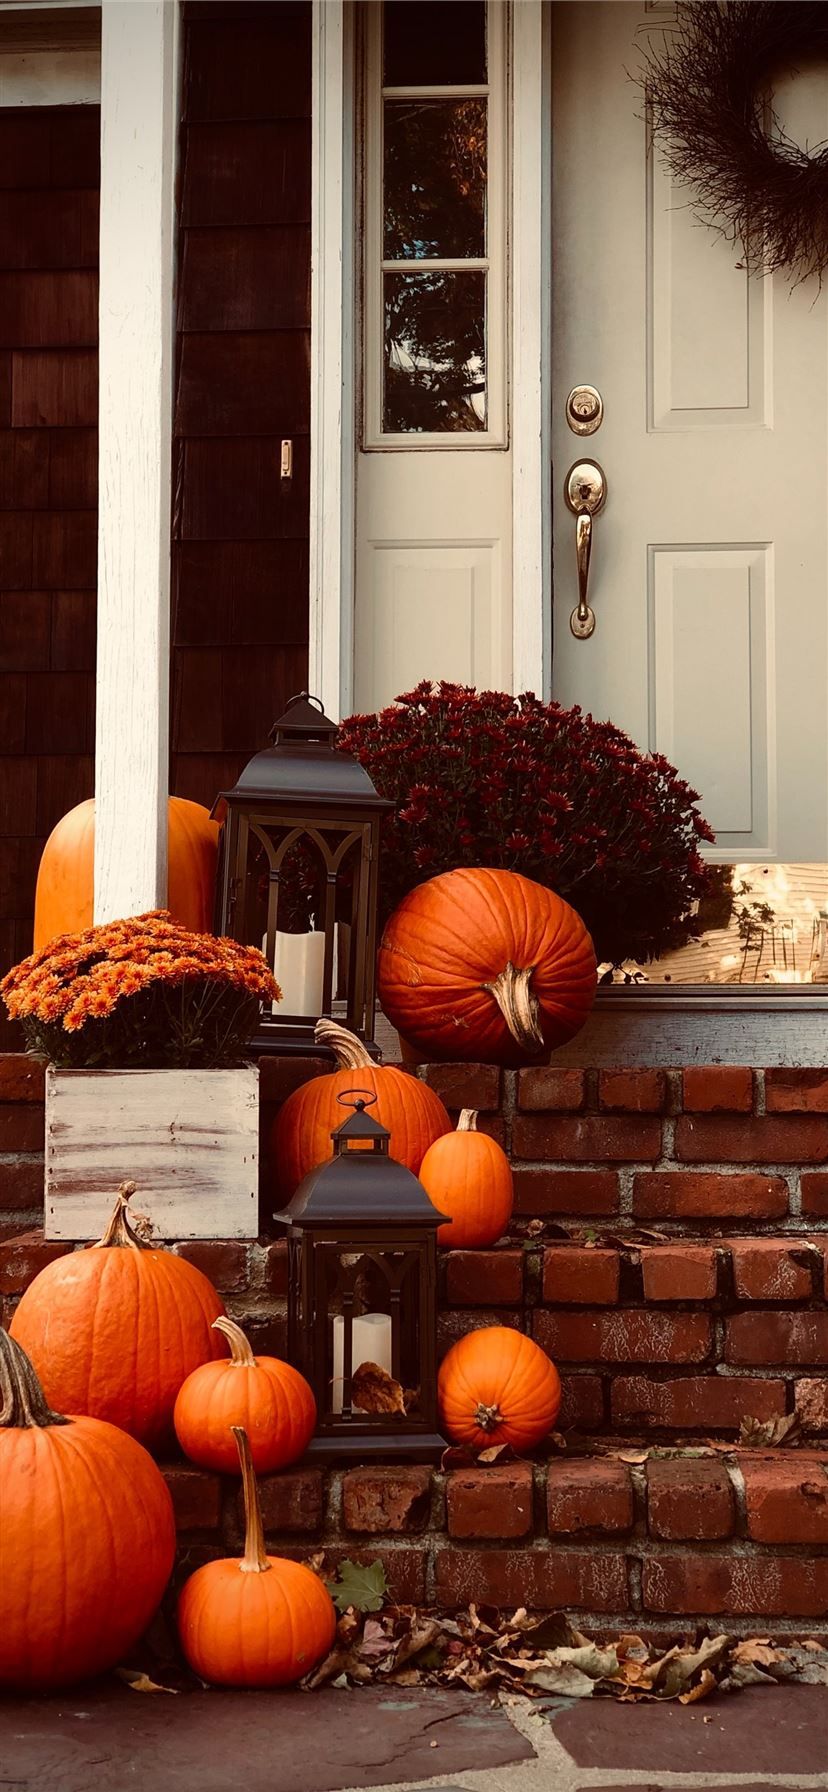 A porch with pumpkins, flowers, and a lantern. - Pumpkin